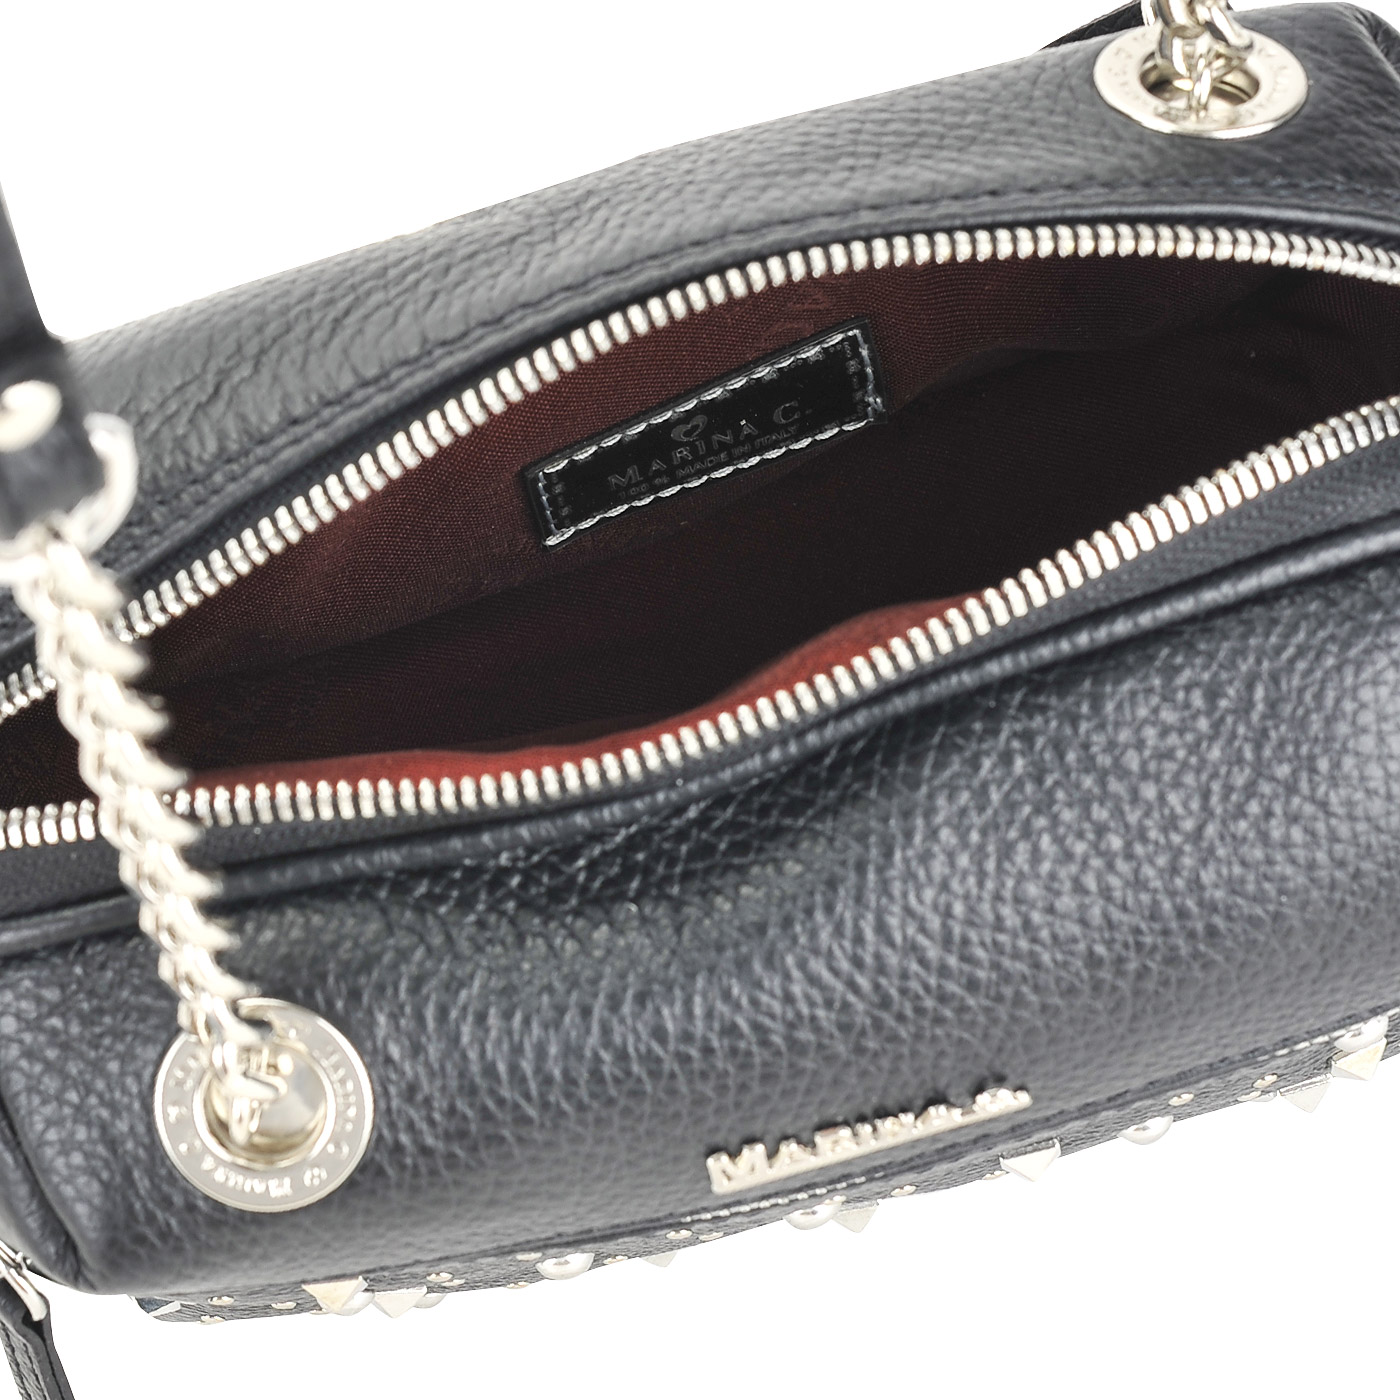 Черная кожаная сумочка через плечо с серебряными клепками Marina Creazioni 